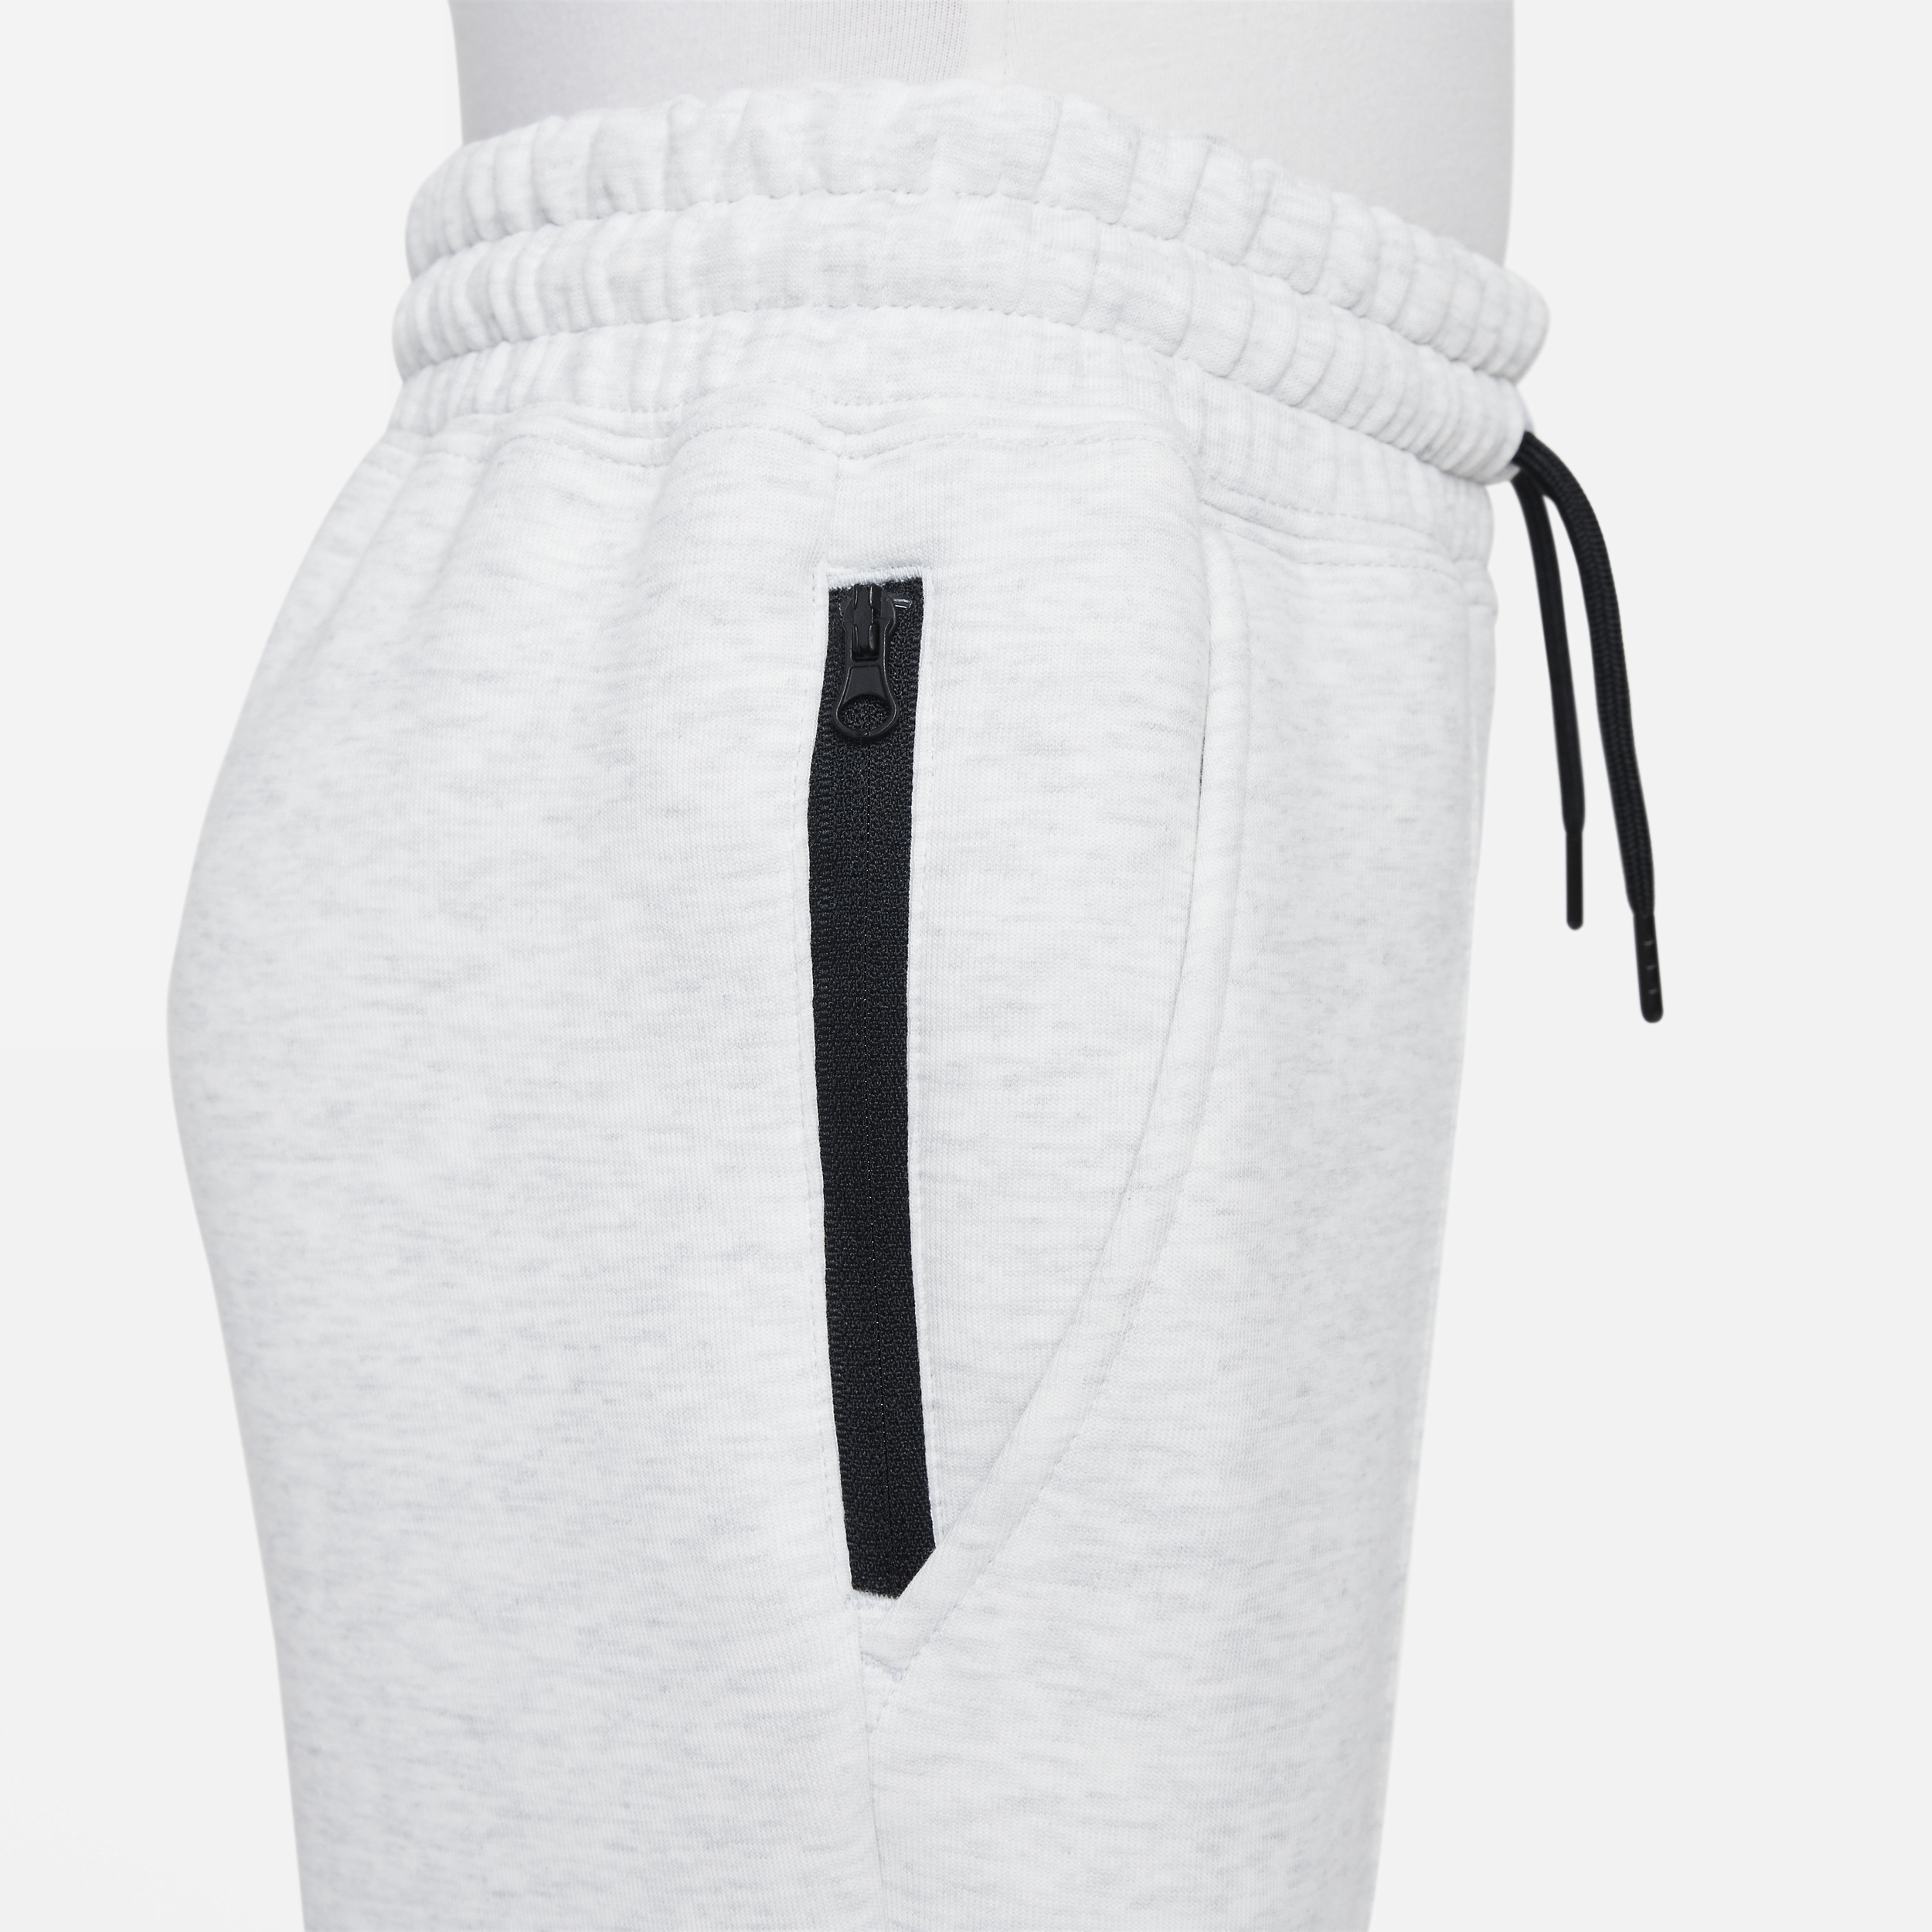 Nike Sportswear Tech Fleece joggingbroek voor meisjes Grijs